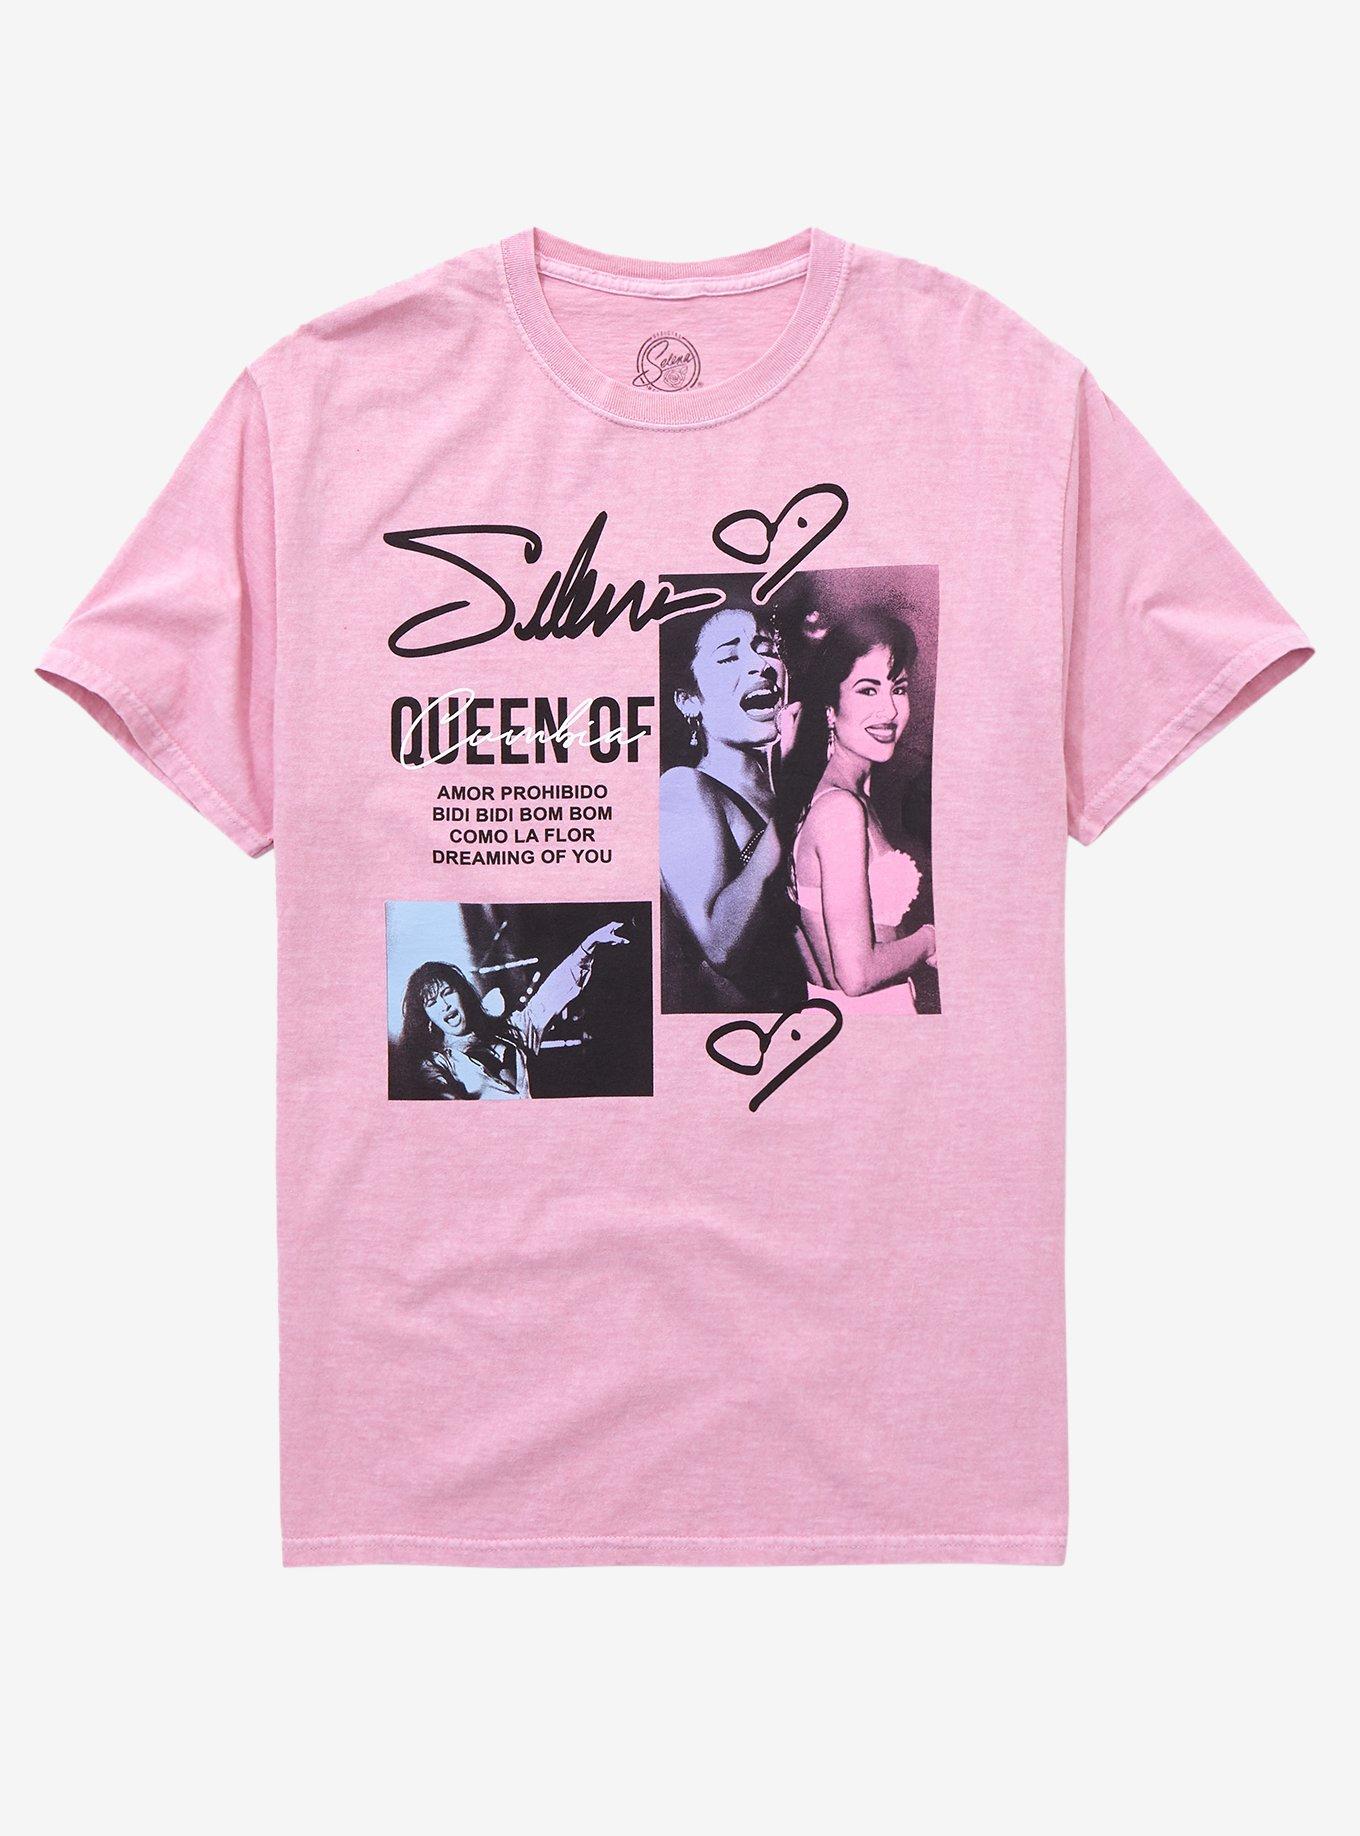 Selena Queen Of Cumbia Boyfriend Fit Girls T-Shirt, PINK, hi-res